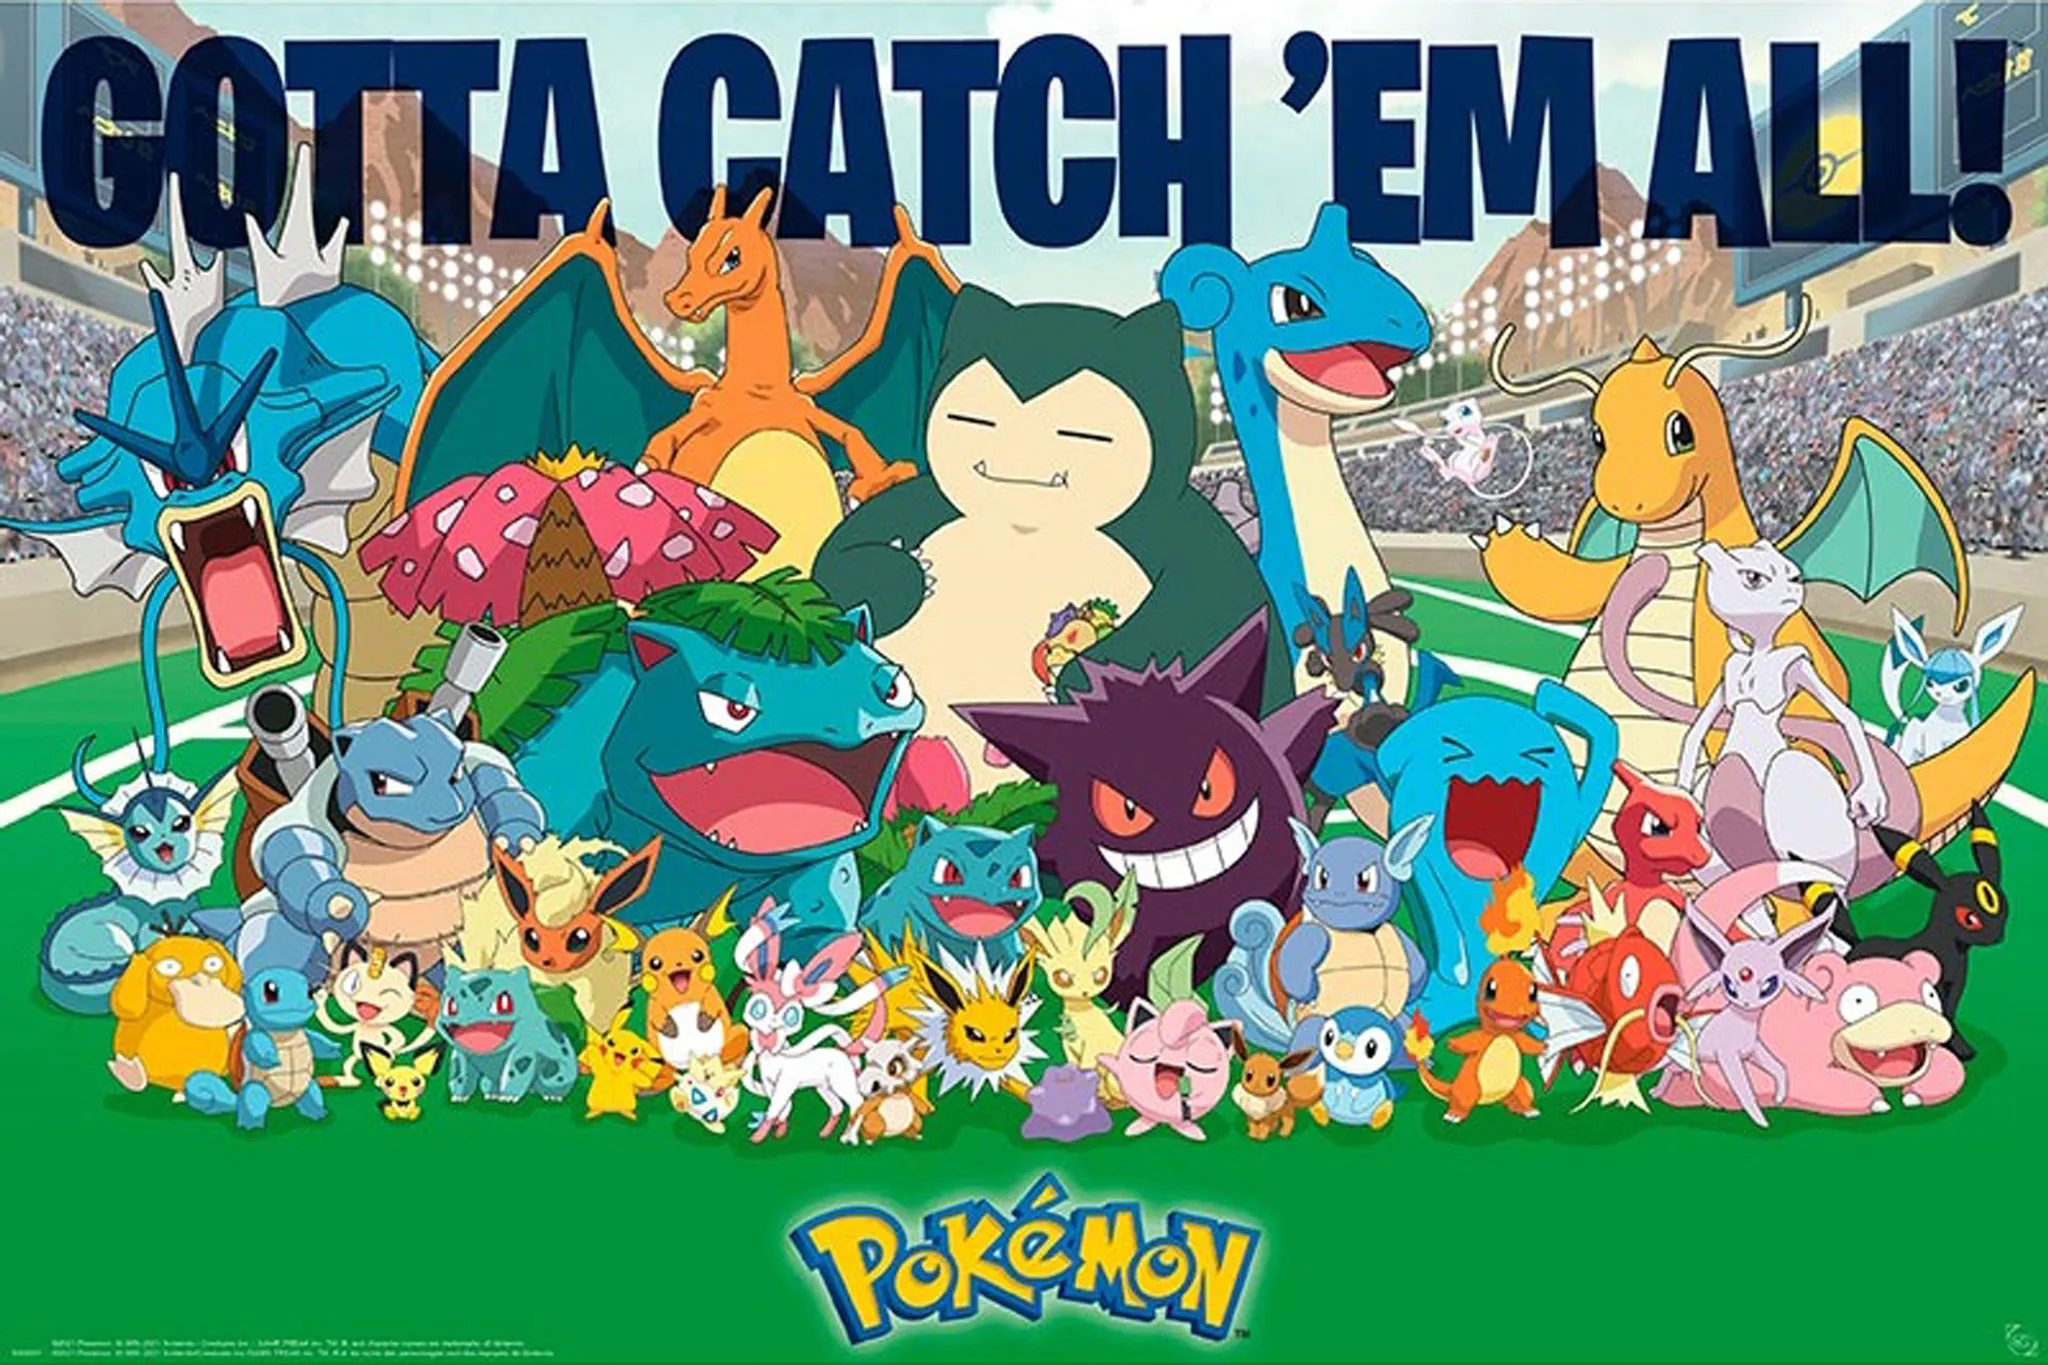 Pokemon Eevee Evolution Poster 61x91.5cm